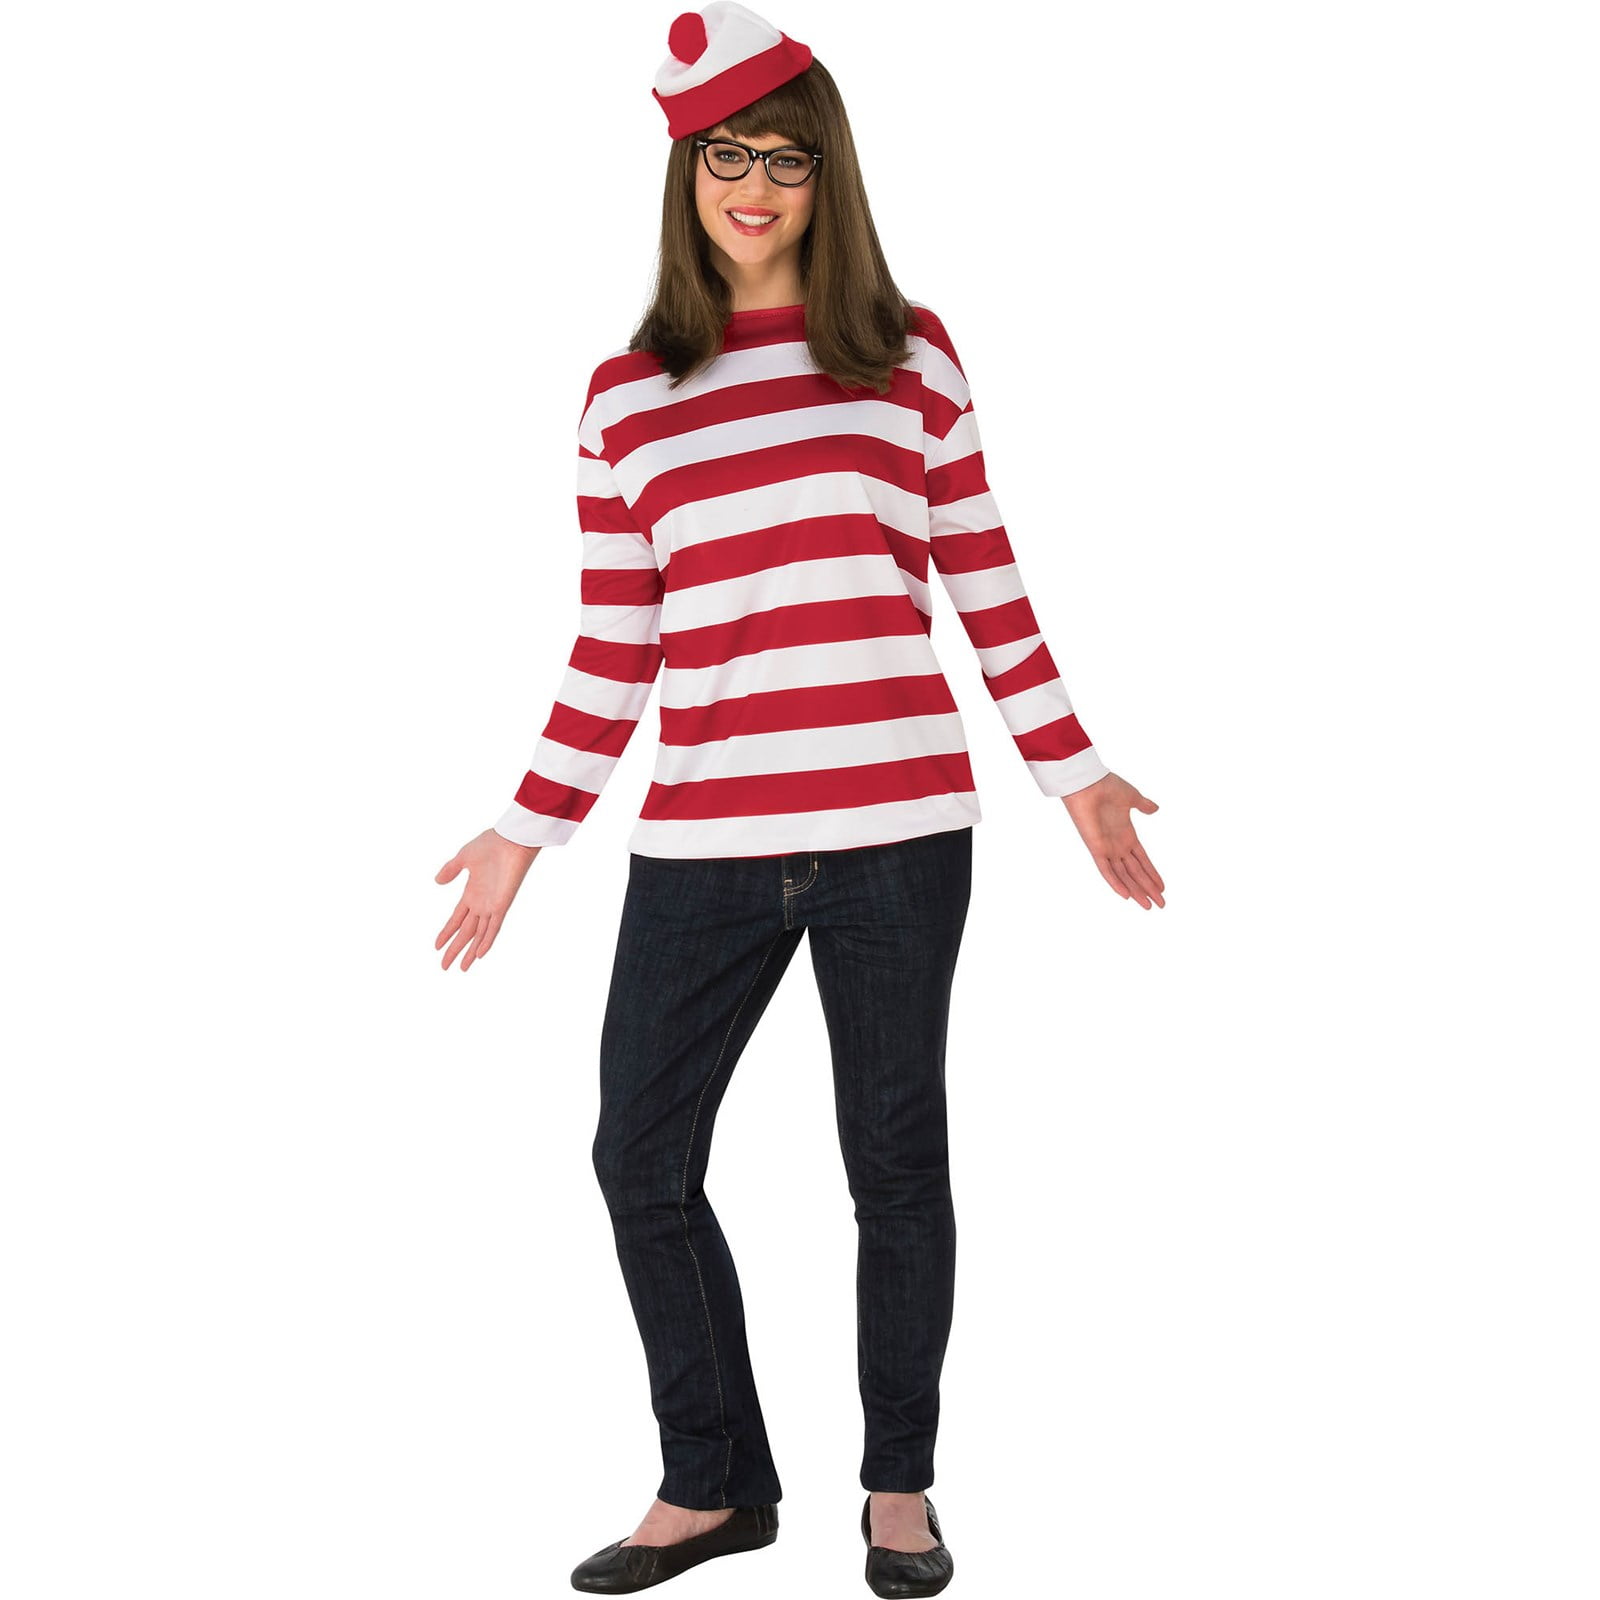 Where's Waldo Wenda Adult Female Dress Costume Kit Large/XL NEW SEALED 